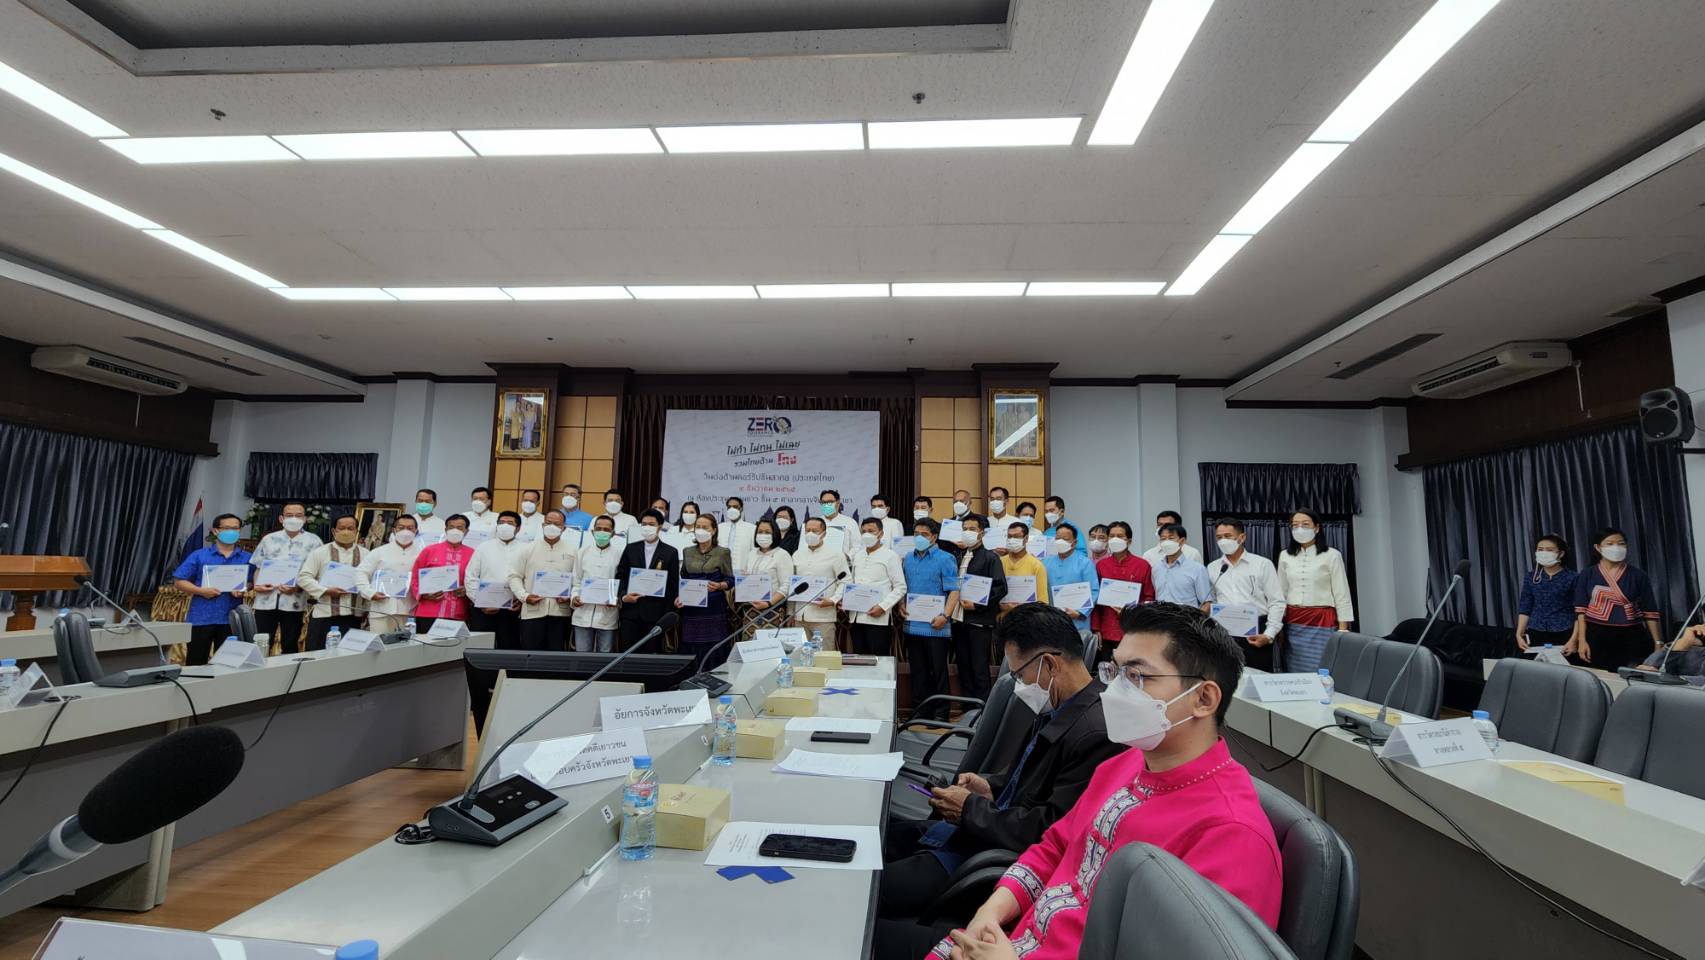 มหาวิทยาลัยพะเยา เข้าร่วมงานวันต่อต้านคอร์รัปชันสากล (ประเทศไทย)  International Anti-Corruption Day ร่วมกับภาคีเครือข่ายของจังหวัดพะเยา